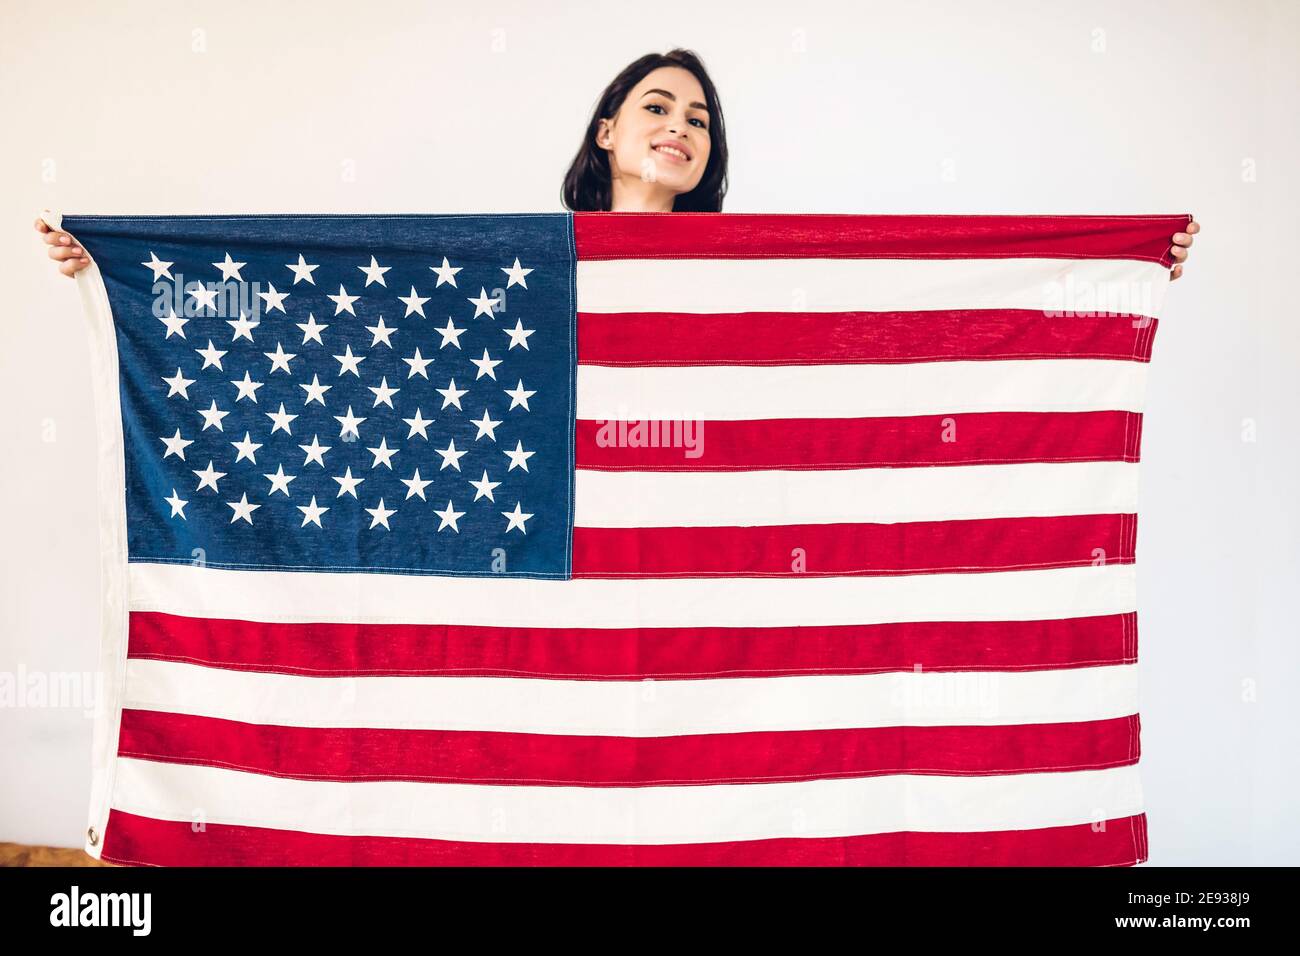 Ritratto di stile di vita di una giovane ragazza felice che tiene una bandiera americana il giorno dell'indipendenza degli Stati Uniti, 4 luglio. Mettere a fuoco la bandiera Foto Stock